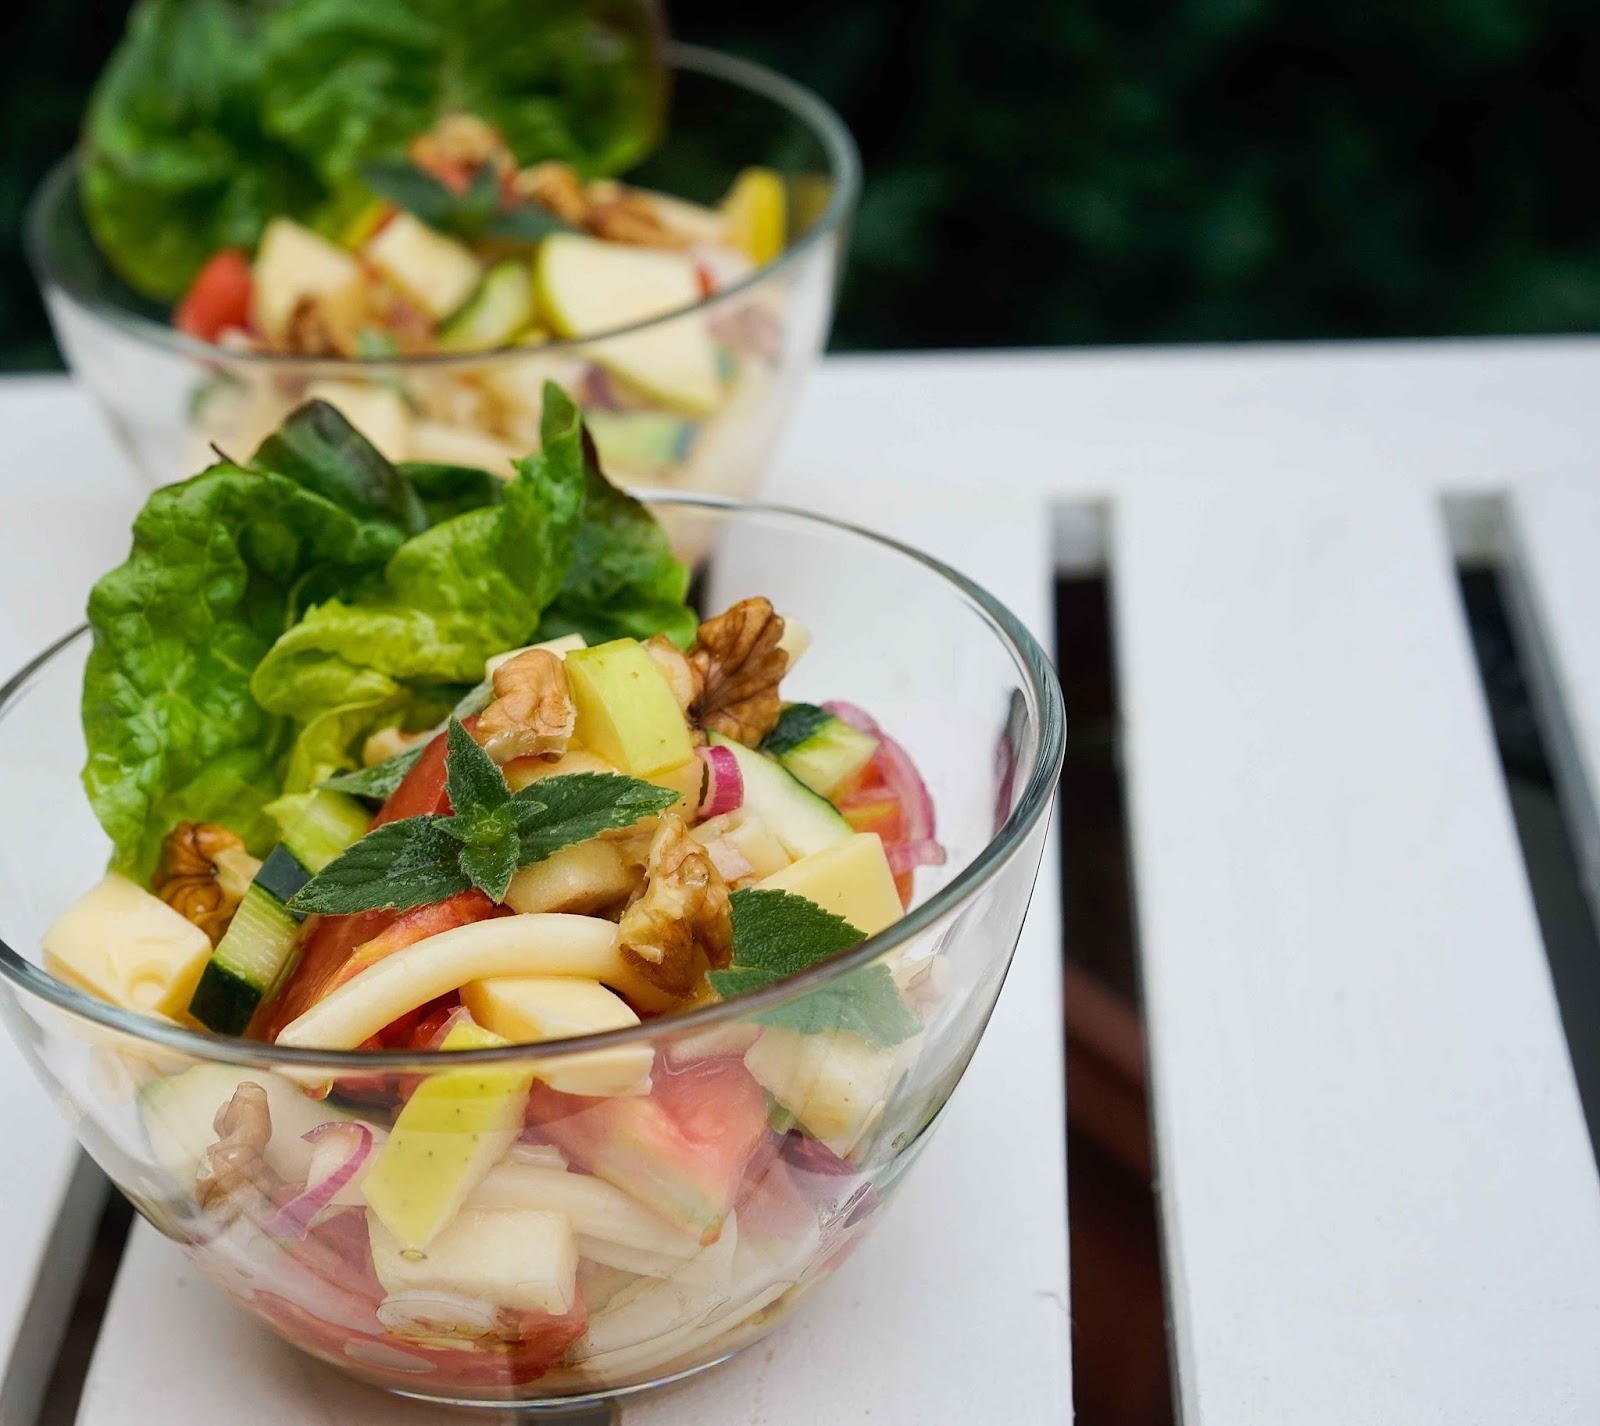 stuttgartcooking: Salat mit Nudeln, Tomaten, Apfel, Walnüssen, Minze ...